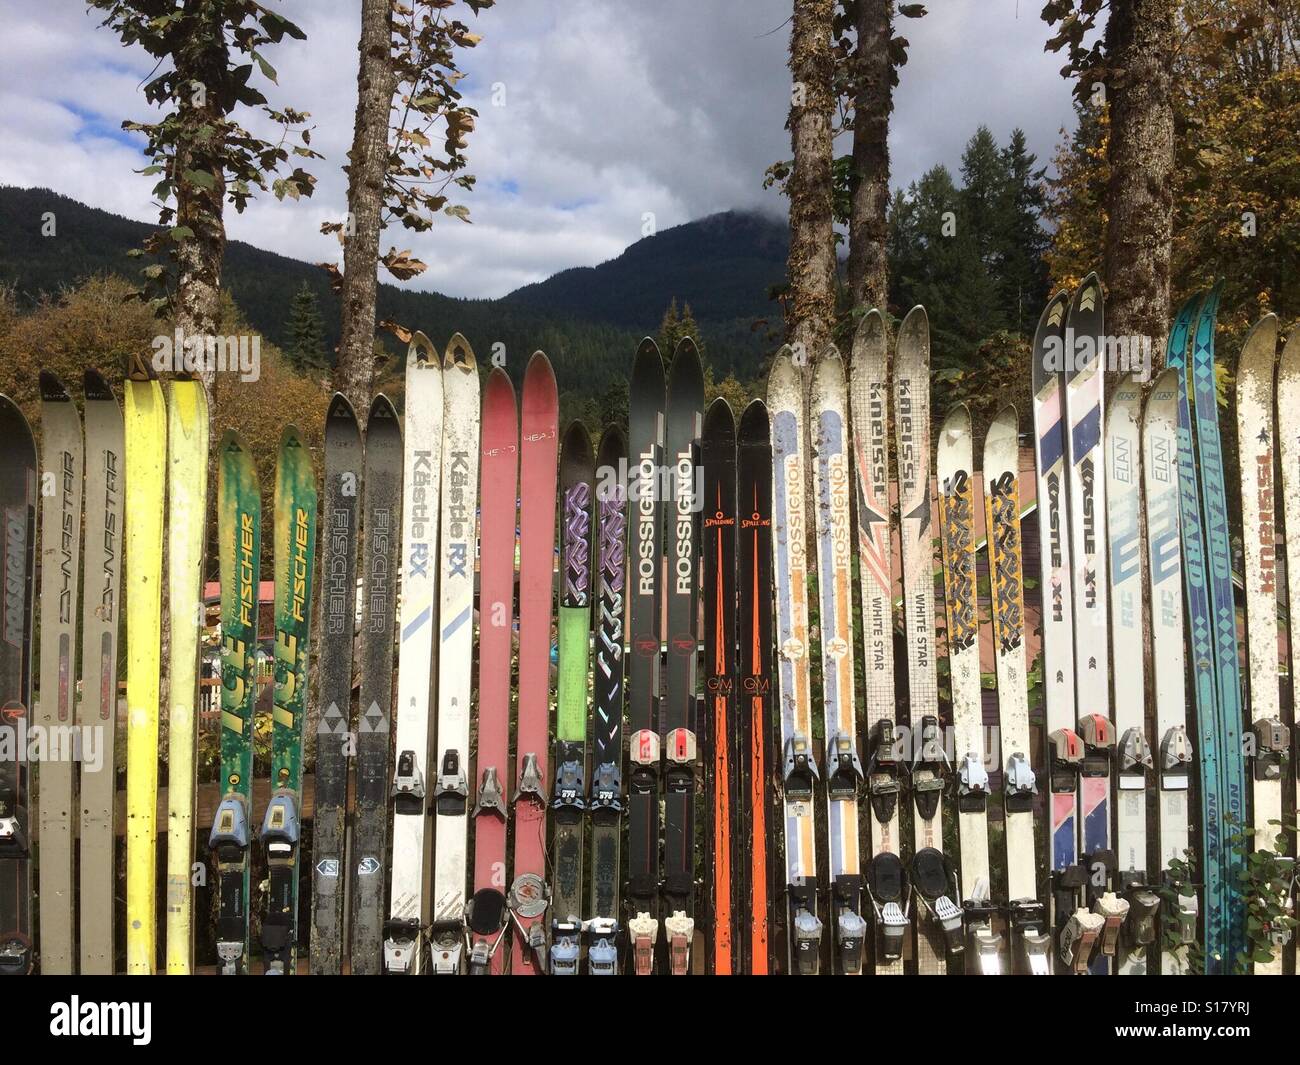 Fence made of old skis, Glacier, Washington Stock Photo